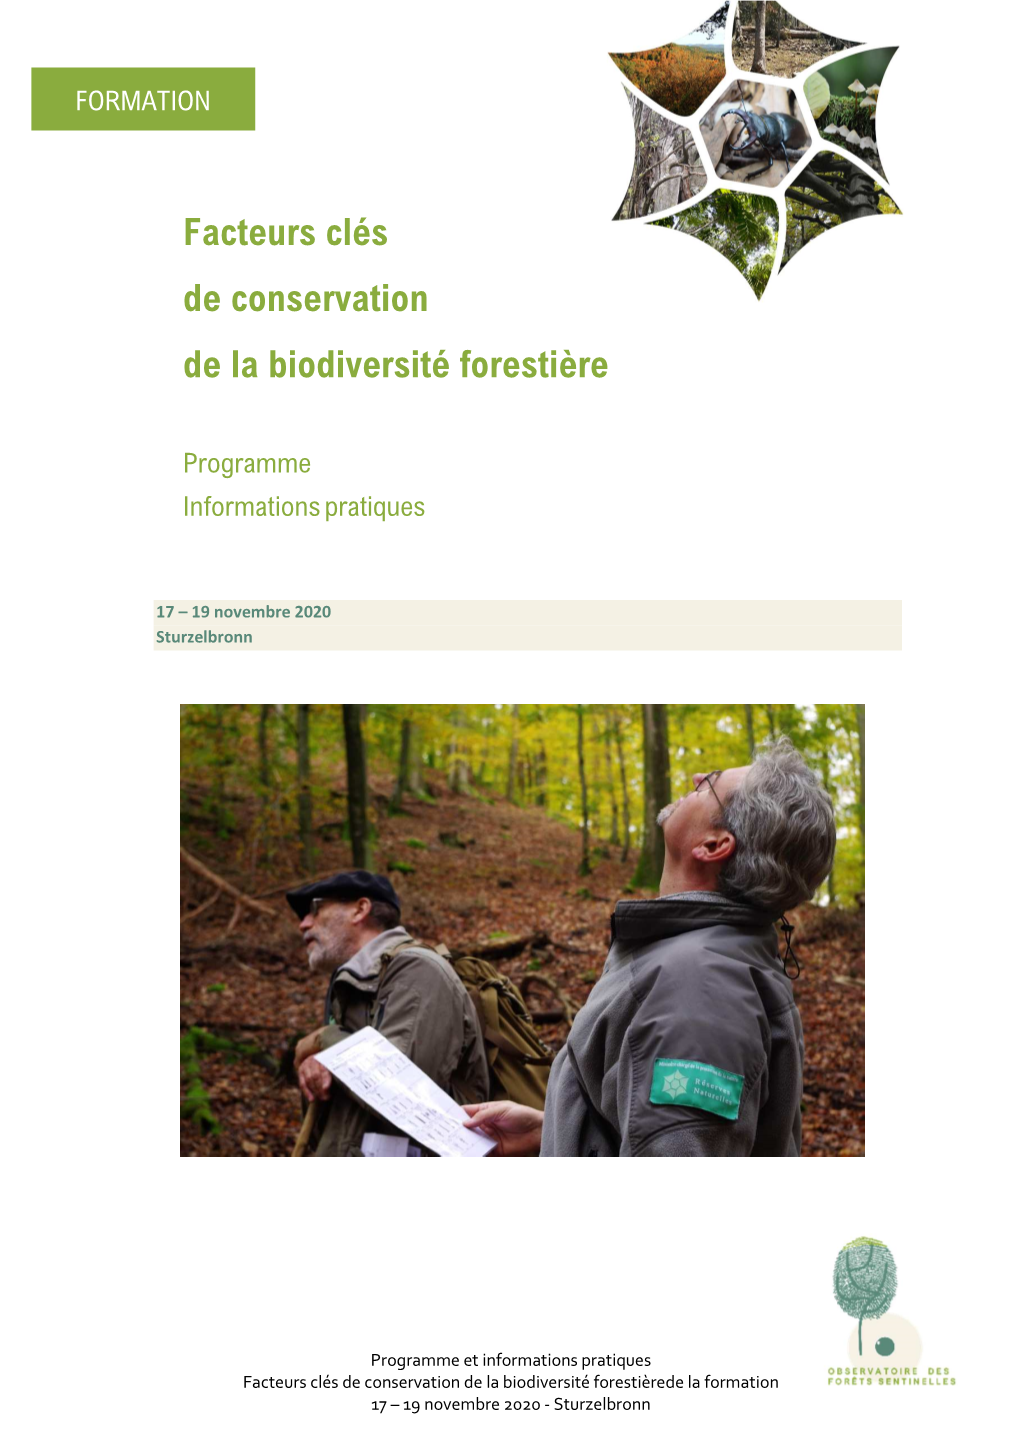 Facteurs Clés De Conservation De La Biodiversité Forestière 2020